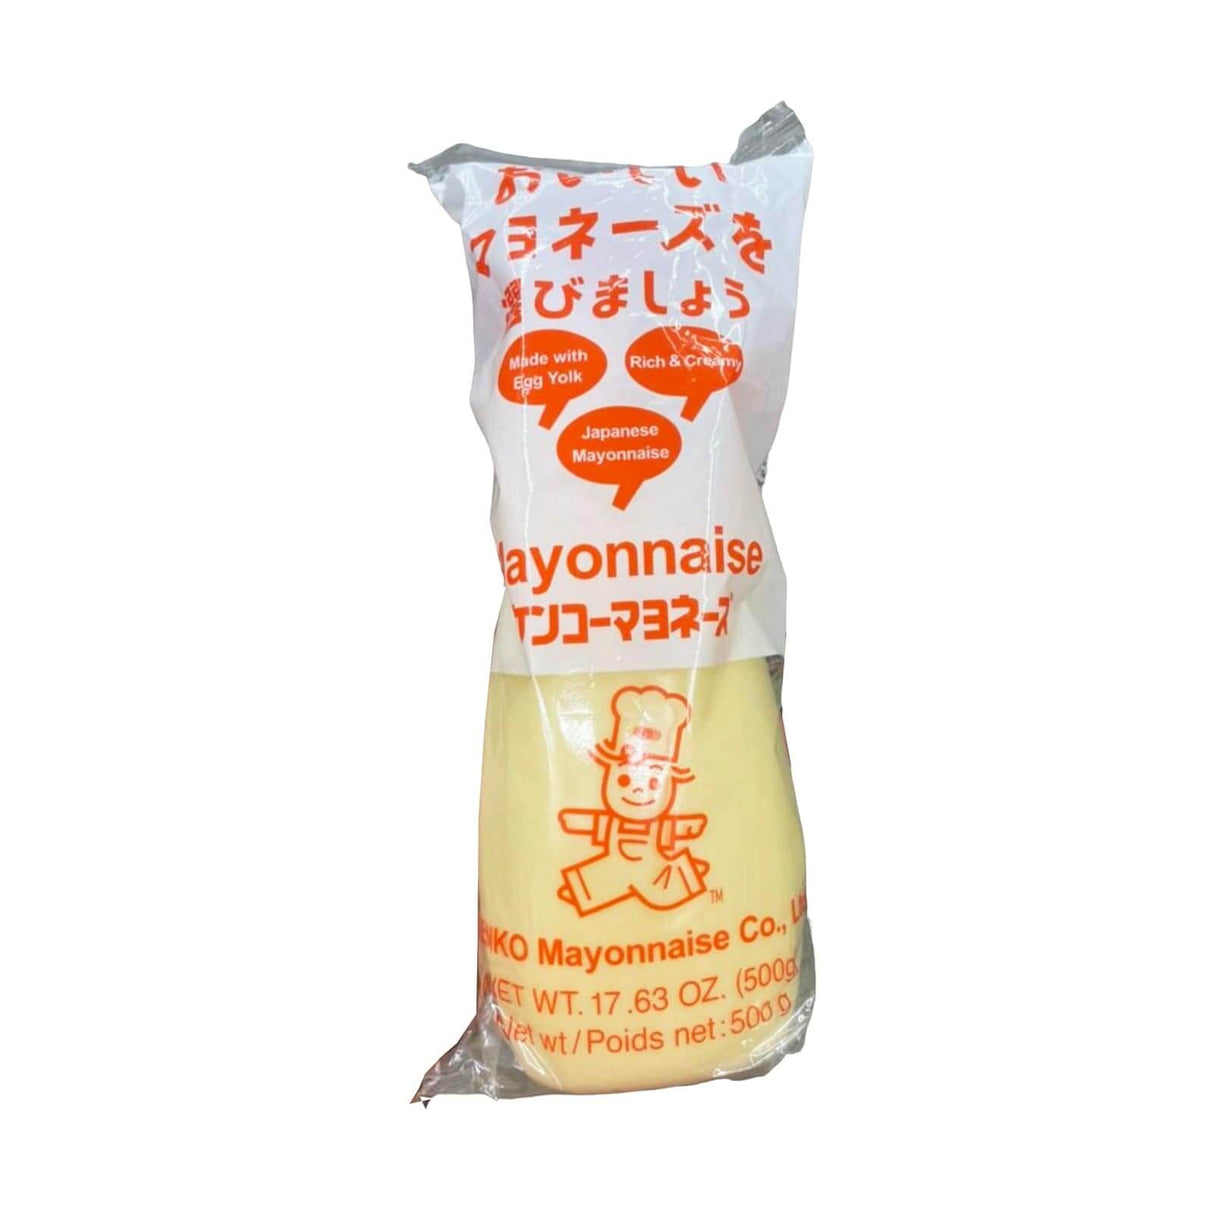 Kenko Japanese Mayonnaise